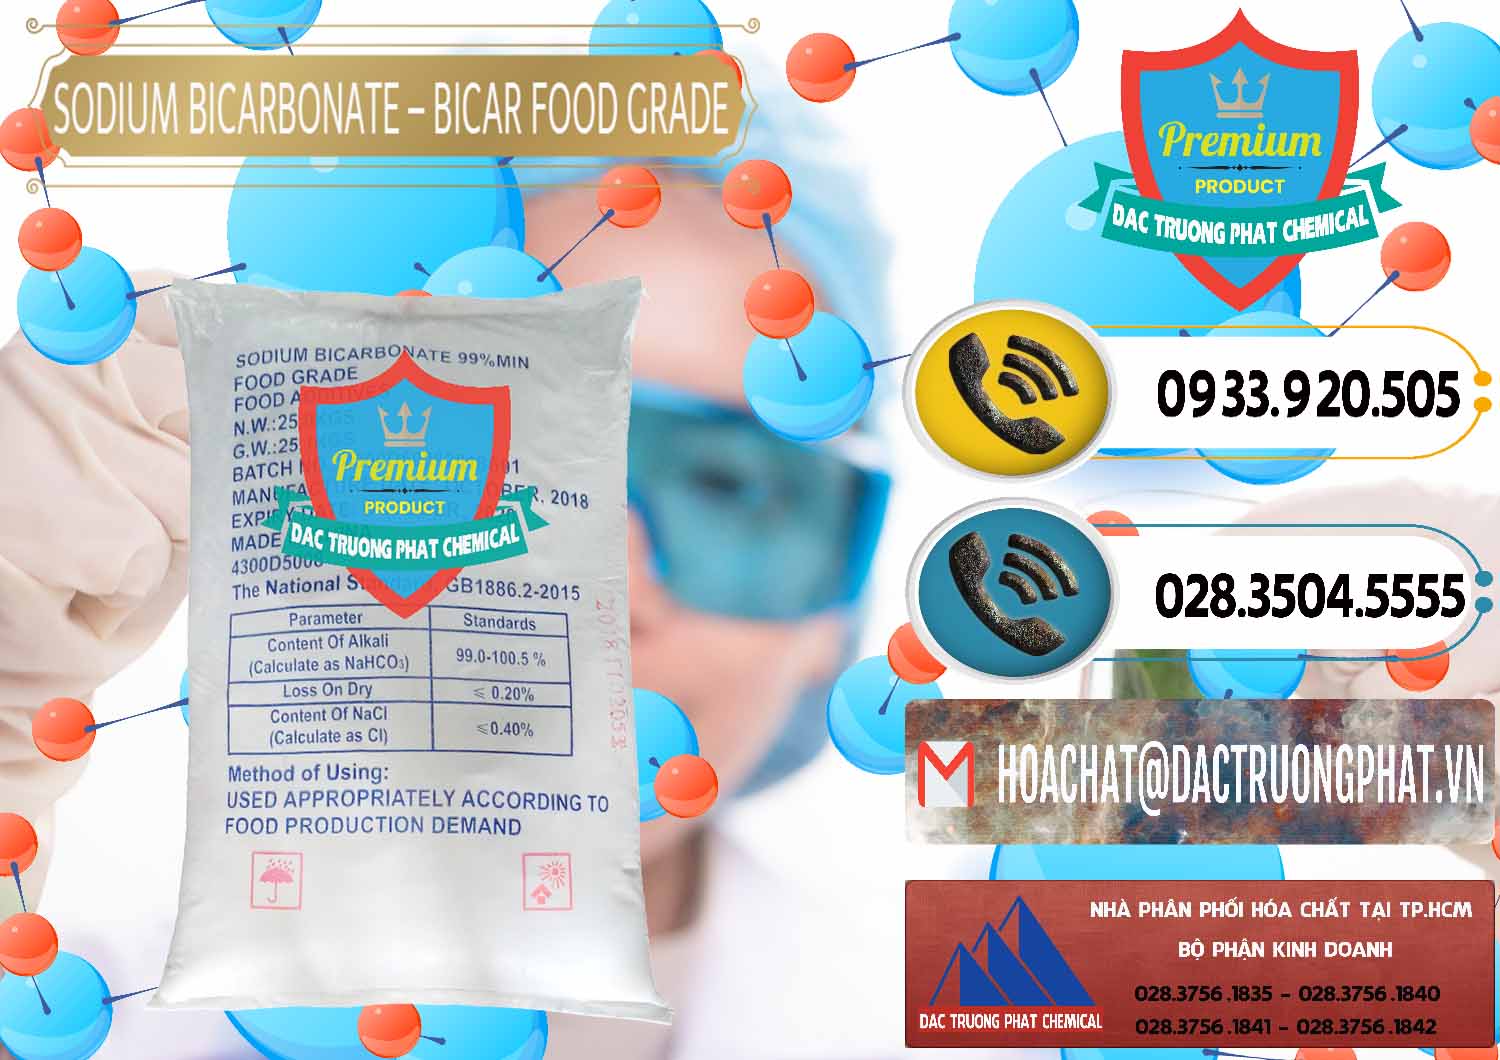 Cty chuyên bán - phân phối Sodium Bicarbonate – Bicar NaHCO3 Food Grade Trung Quốc China - 0138 - Cty cung cấp và kinh doanh hóa chất tại TP.HCM - hoachatdetnhuom.vn